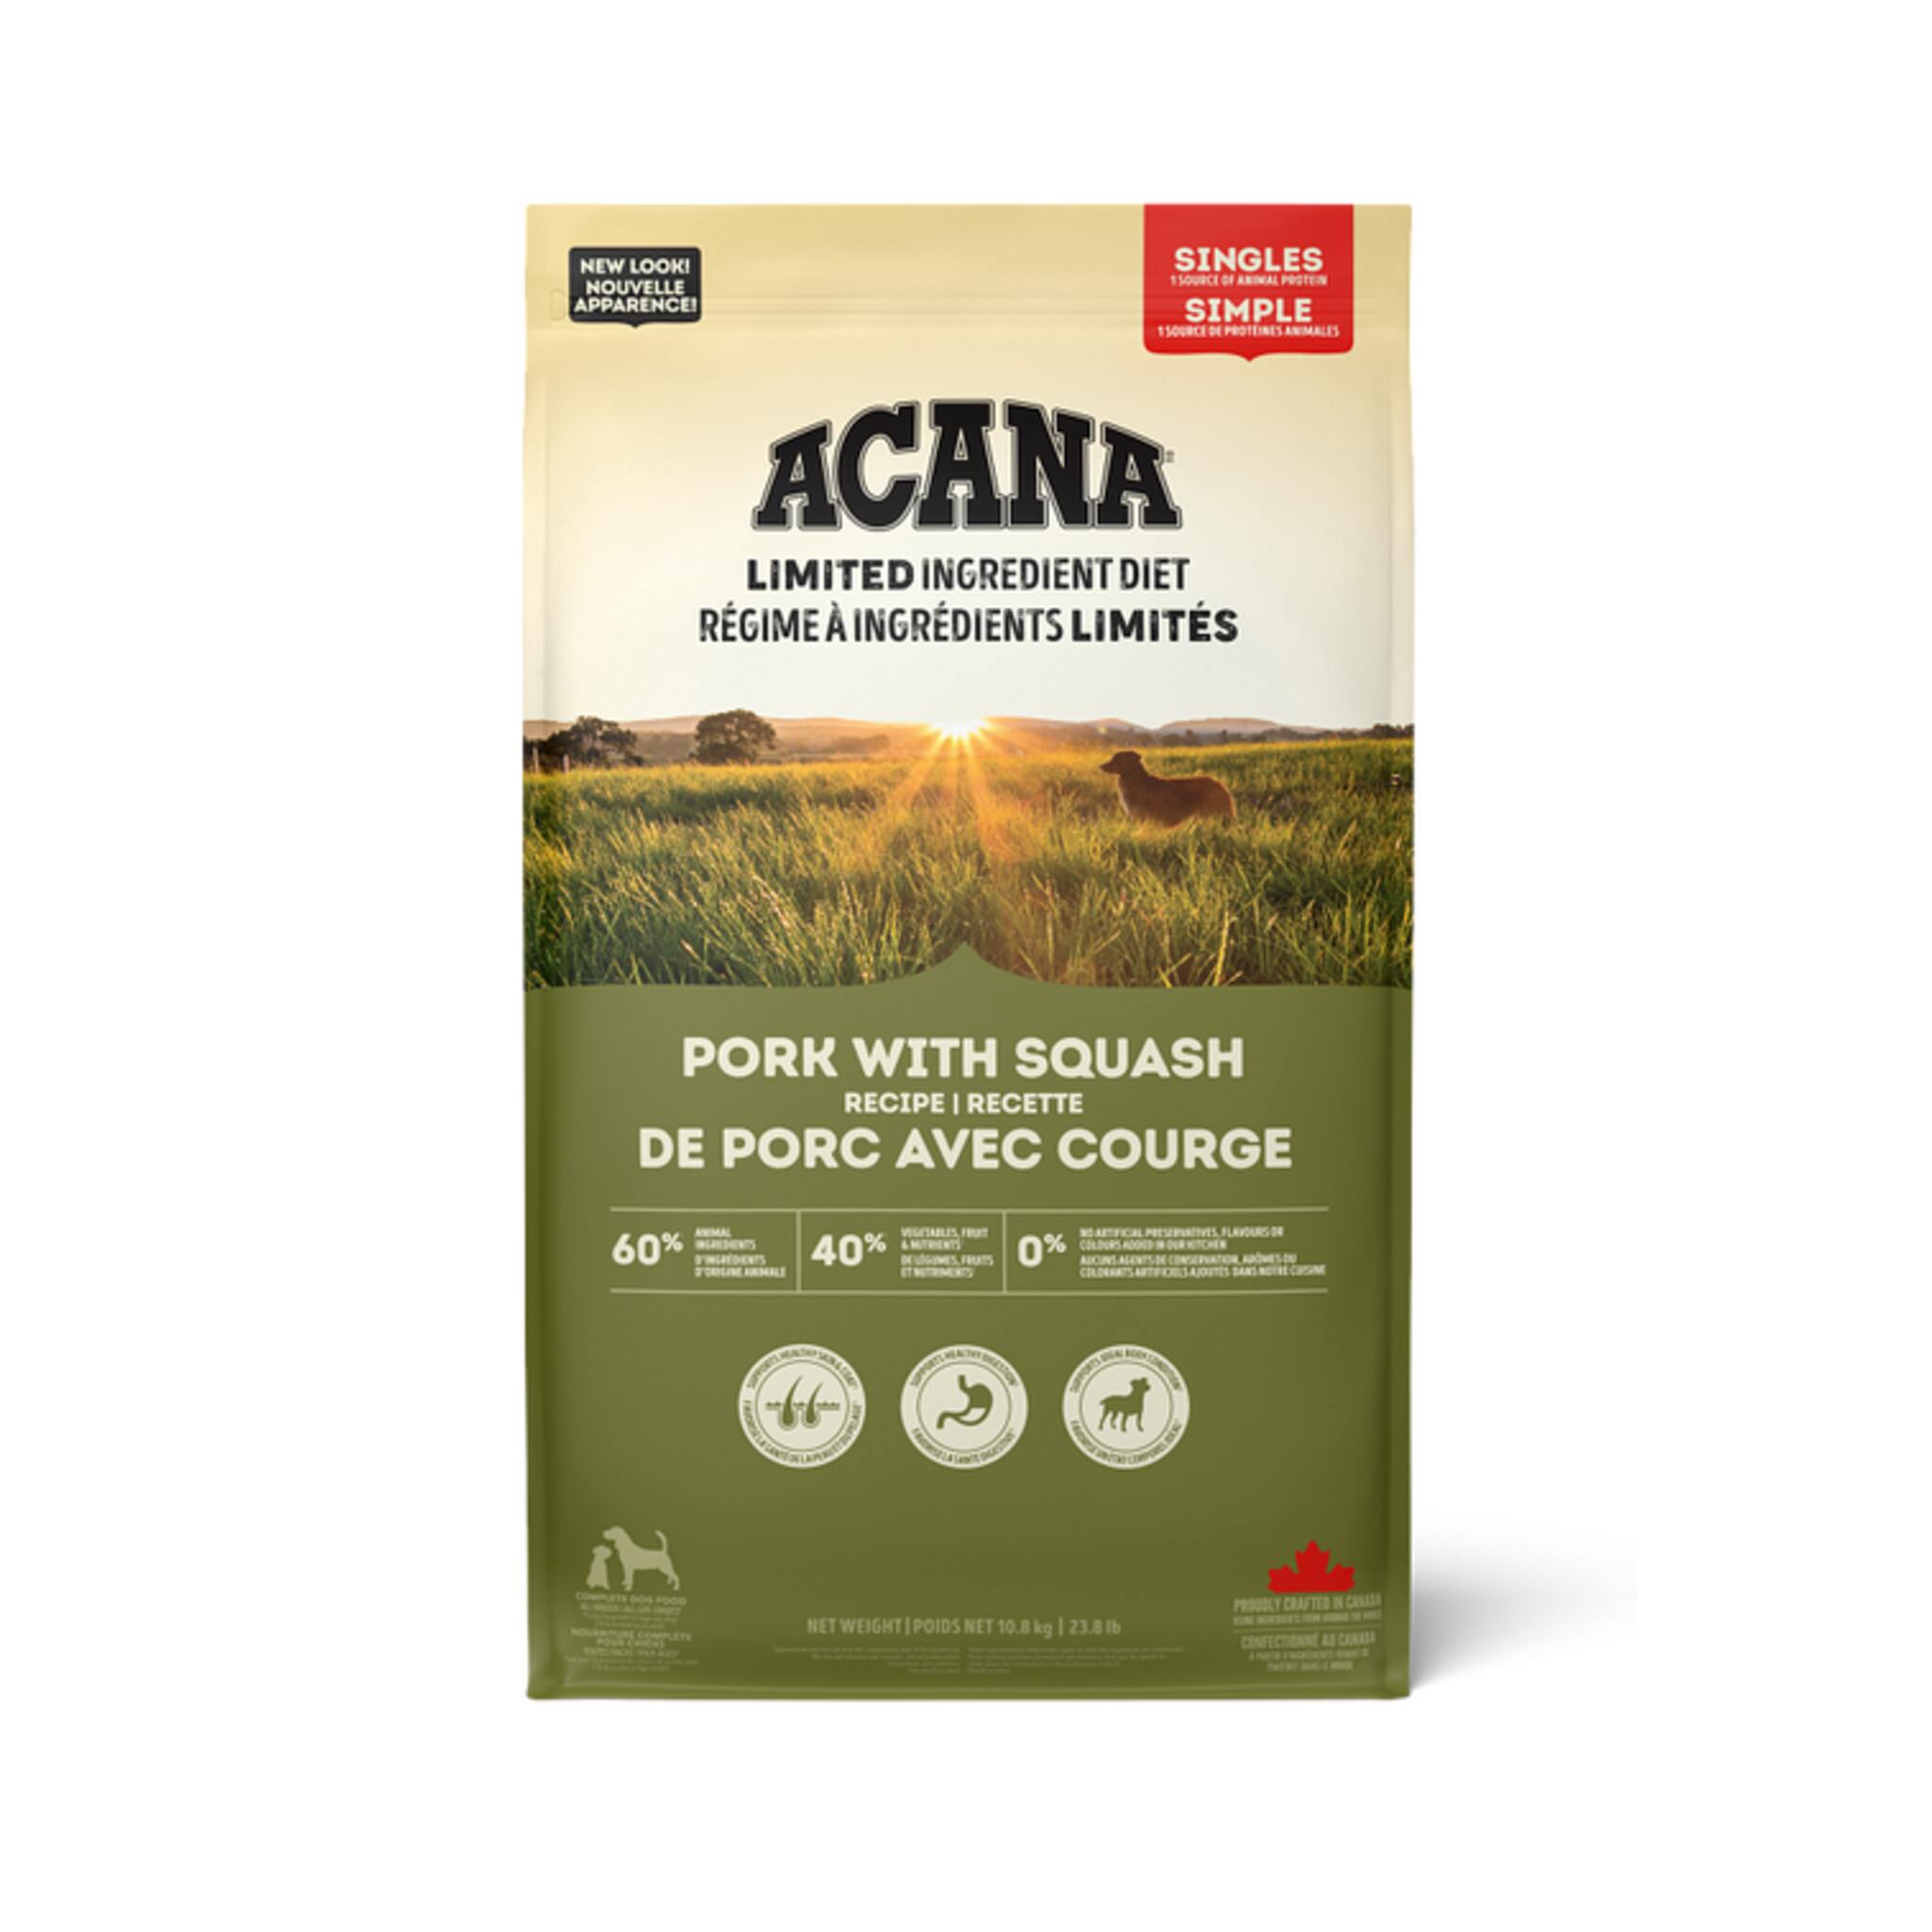 A bag of Acana Singles dog food, Pork with Squash recipe, 23.8 lb.